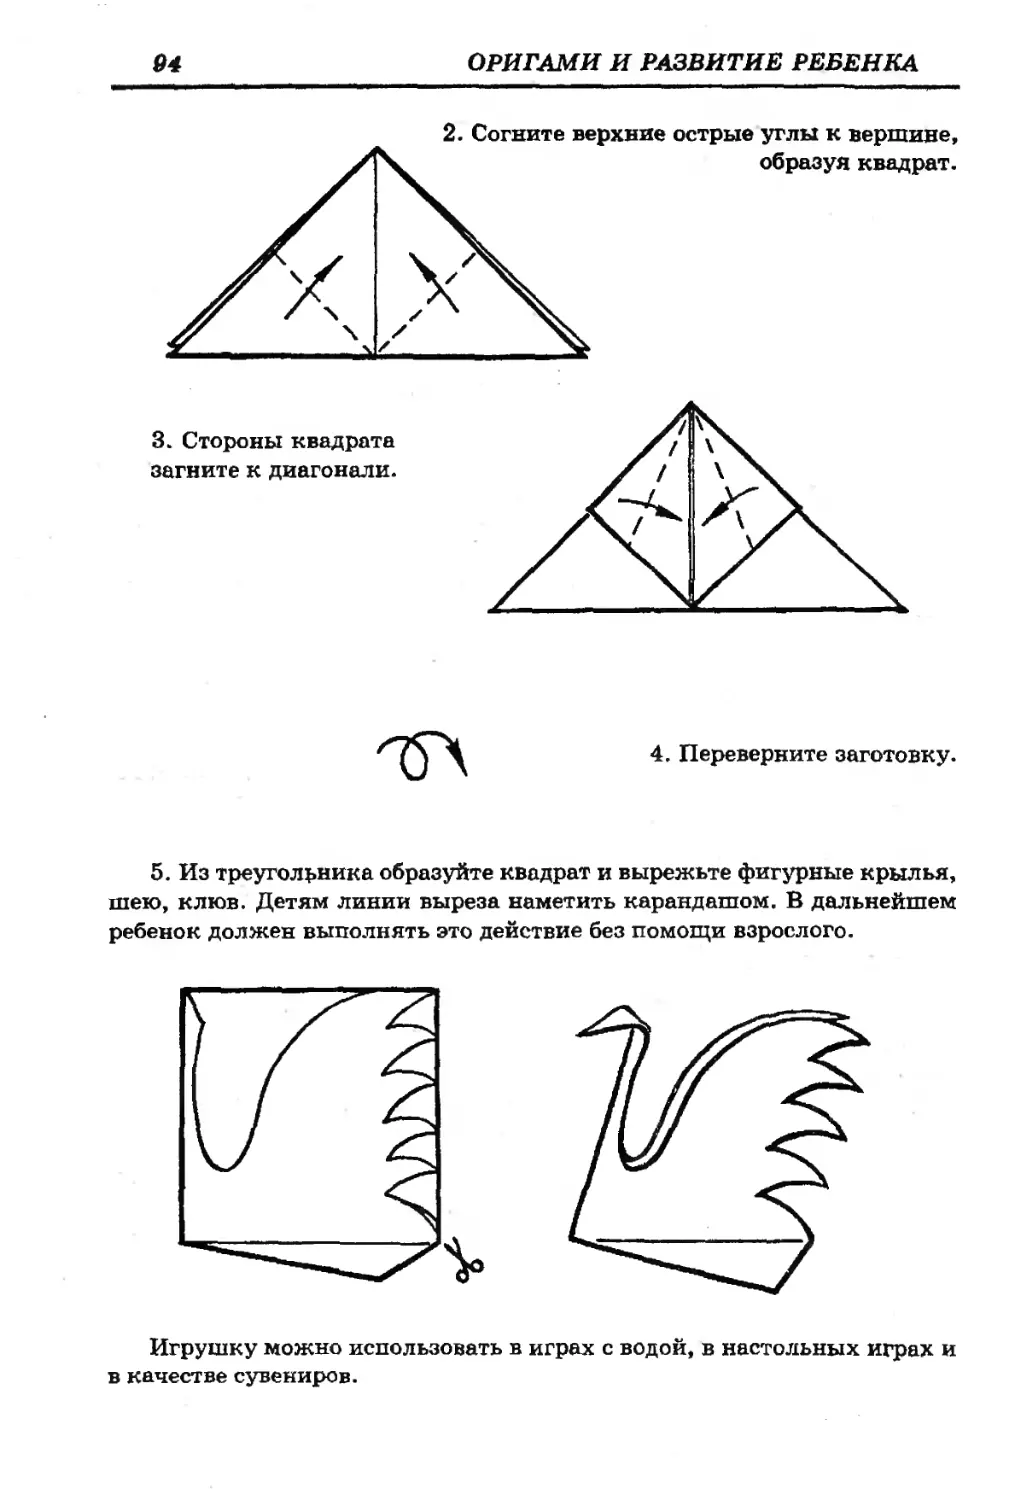 Лебедь из бумаги инструкция. Модульное оригами лебедь схема сборки. Лебедь из бумаги схема сборки. Схема лебедя из модульного оригами. Оригами для детей лебедь схемы пошаговые.